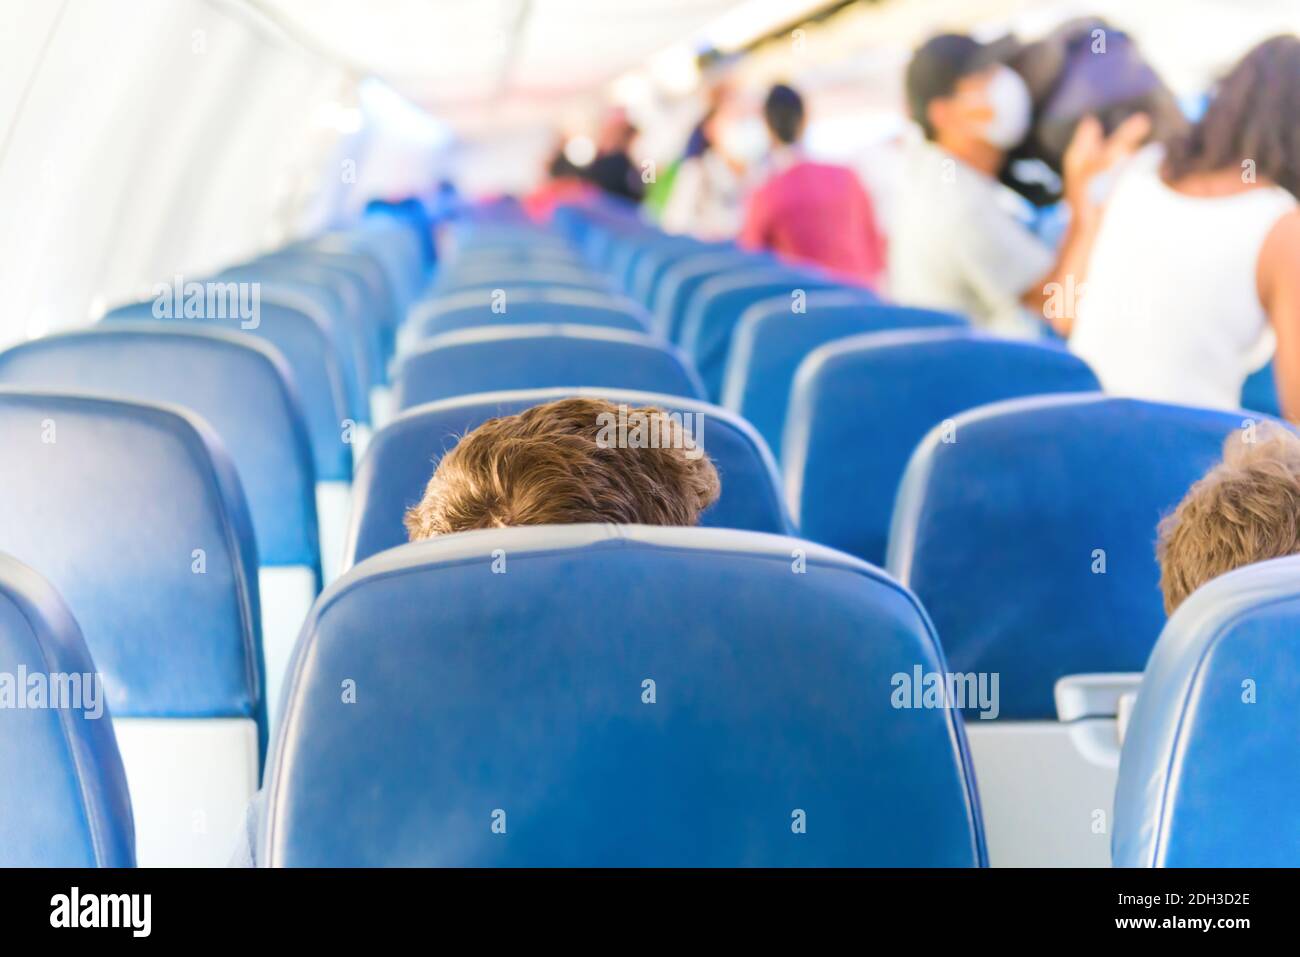 Empty plane interior with few people Stock Photo